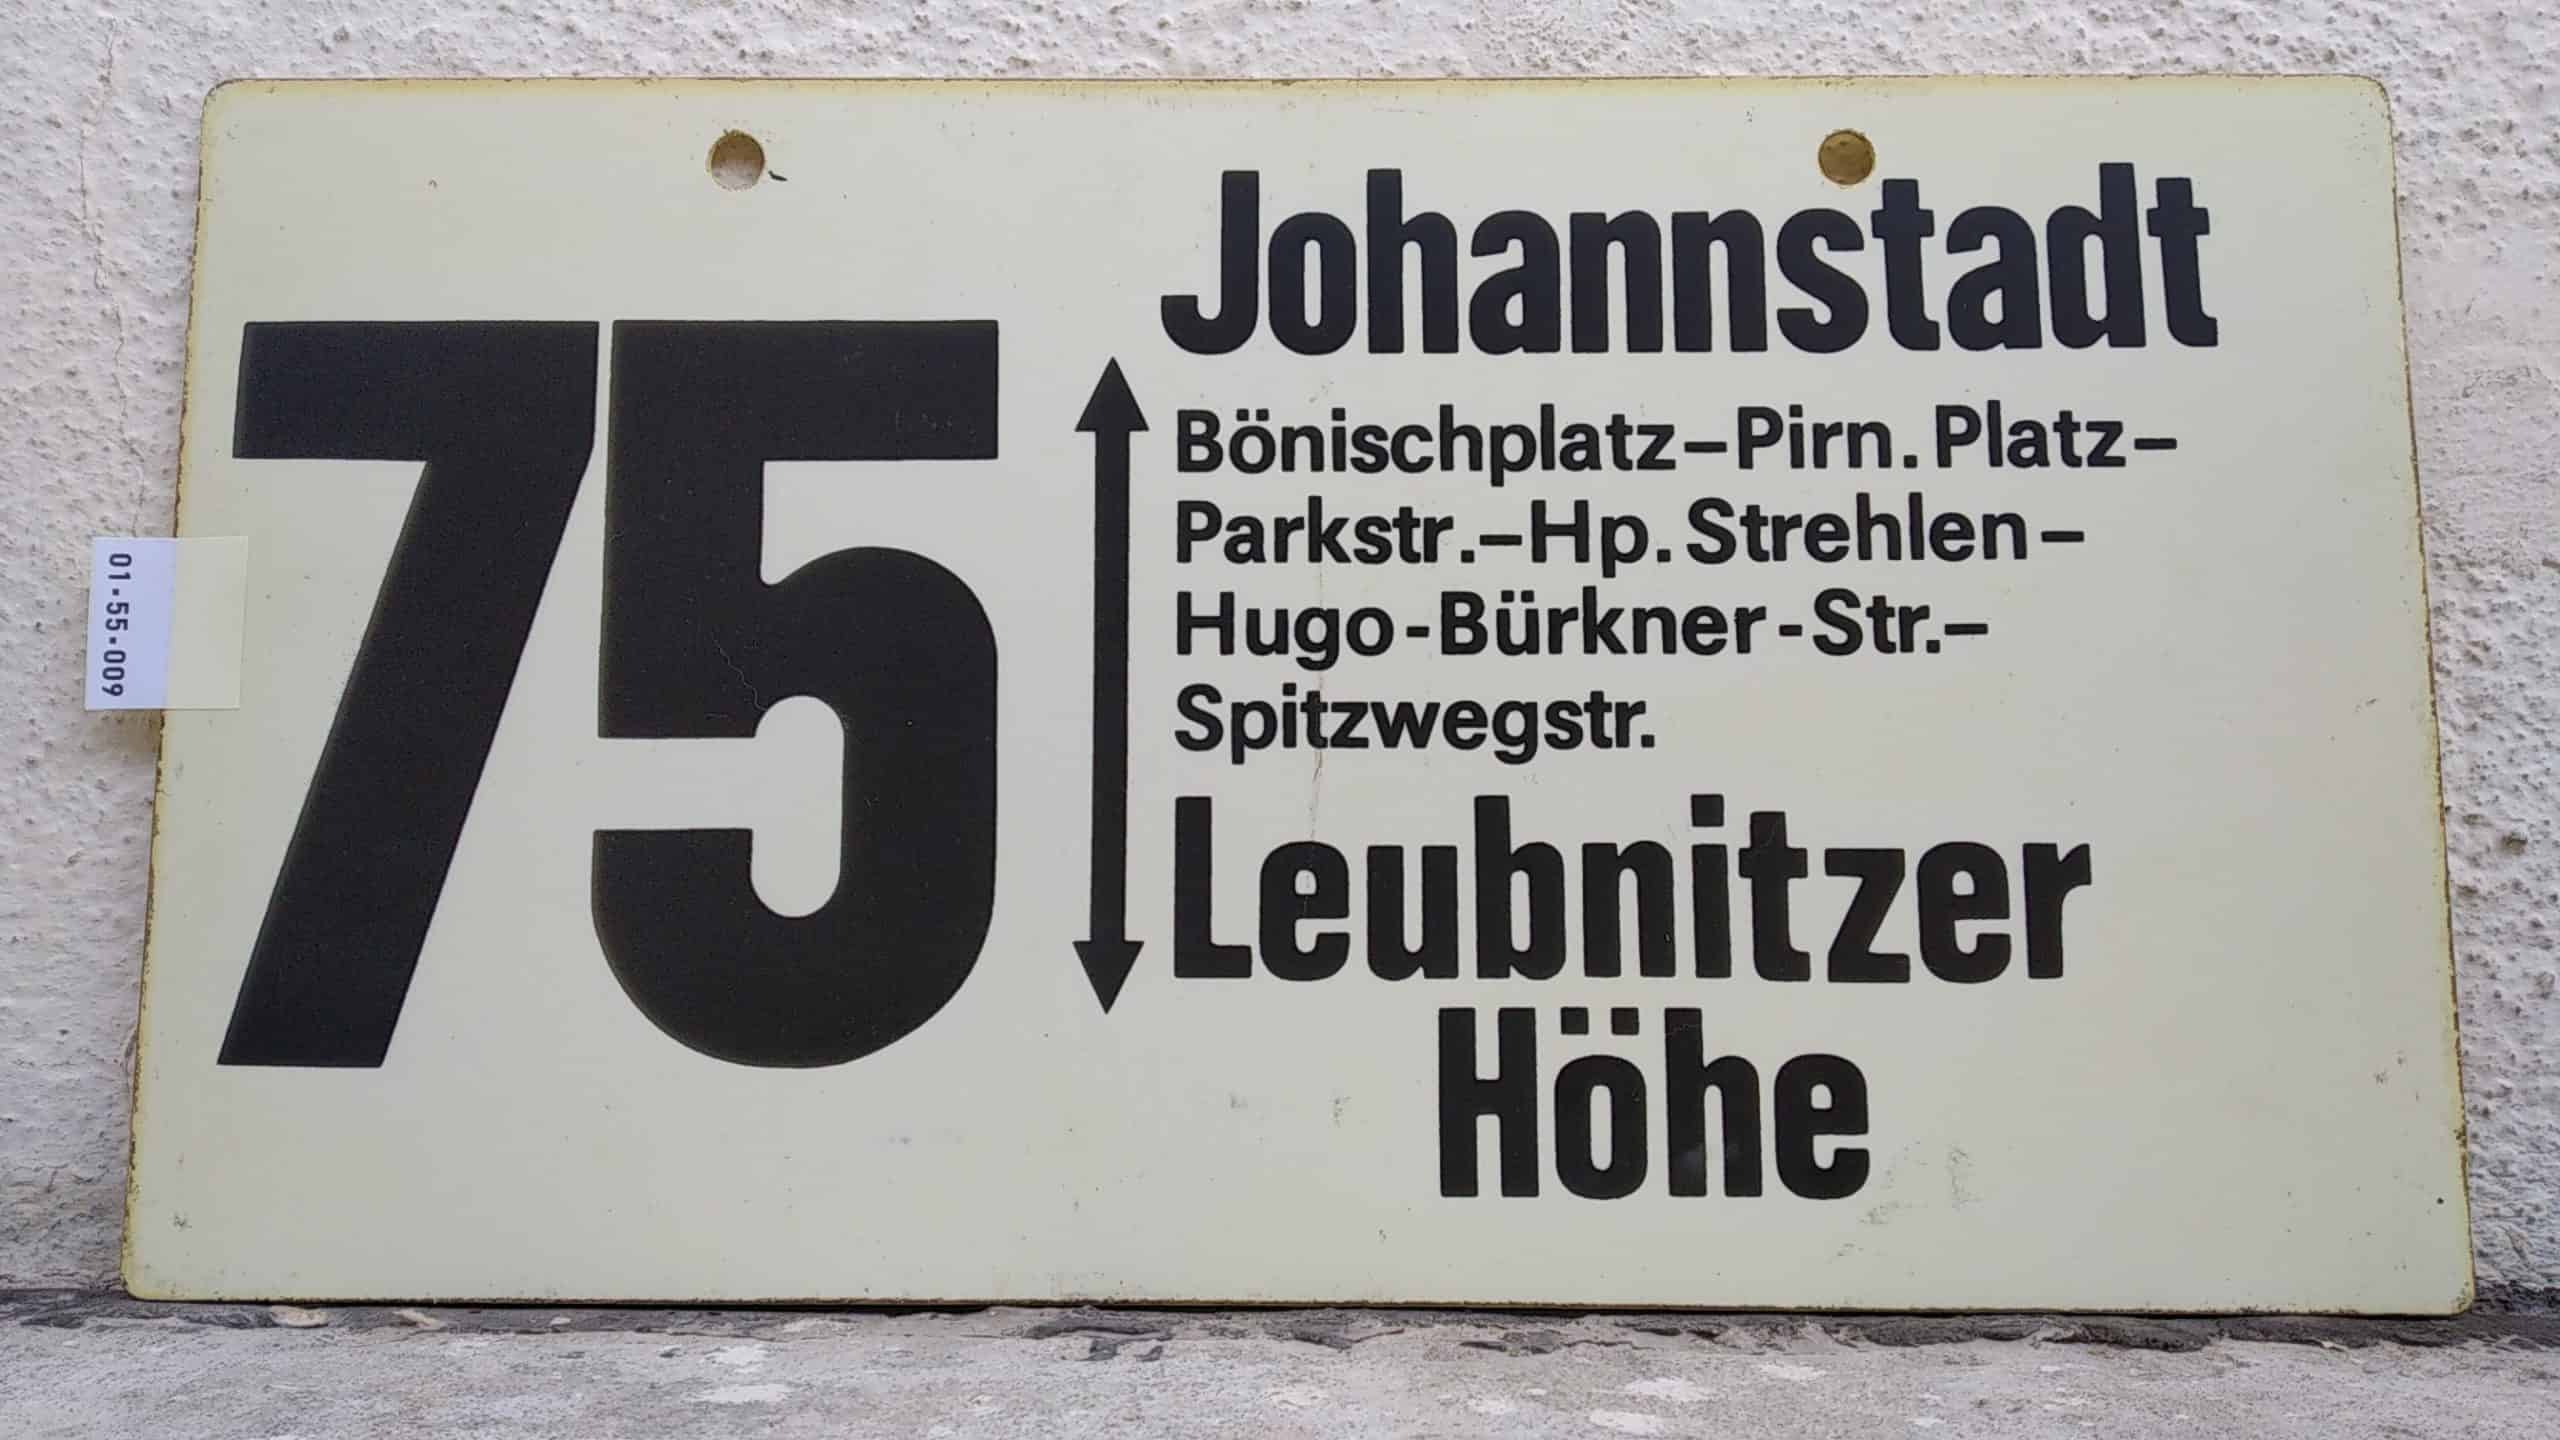 Ein seltenes Bus-Linienschild aus Dresden der Linie 75 von Johannstadt nach Leubnitzer Höhe #1